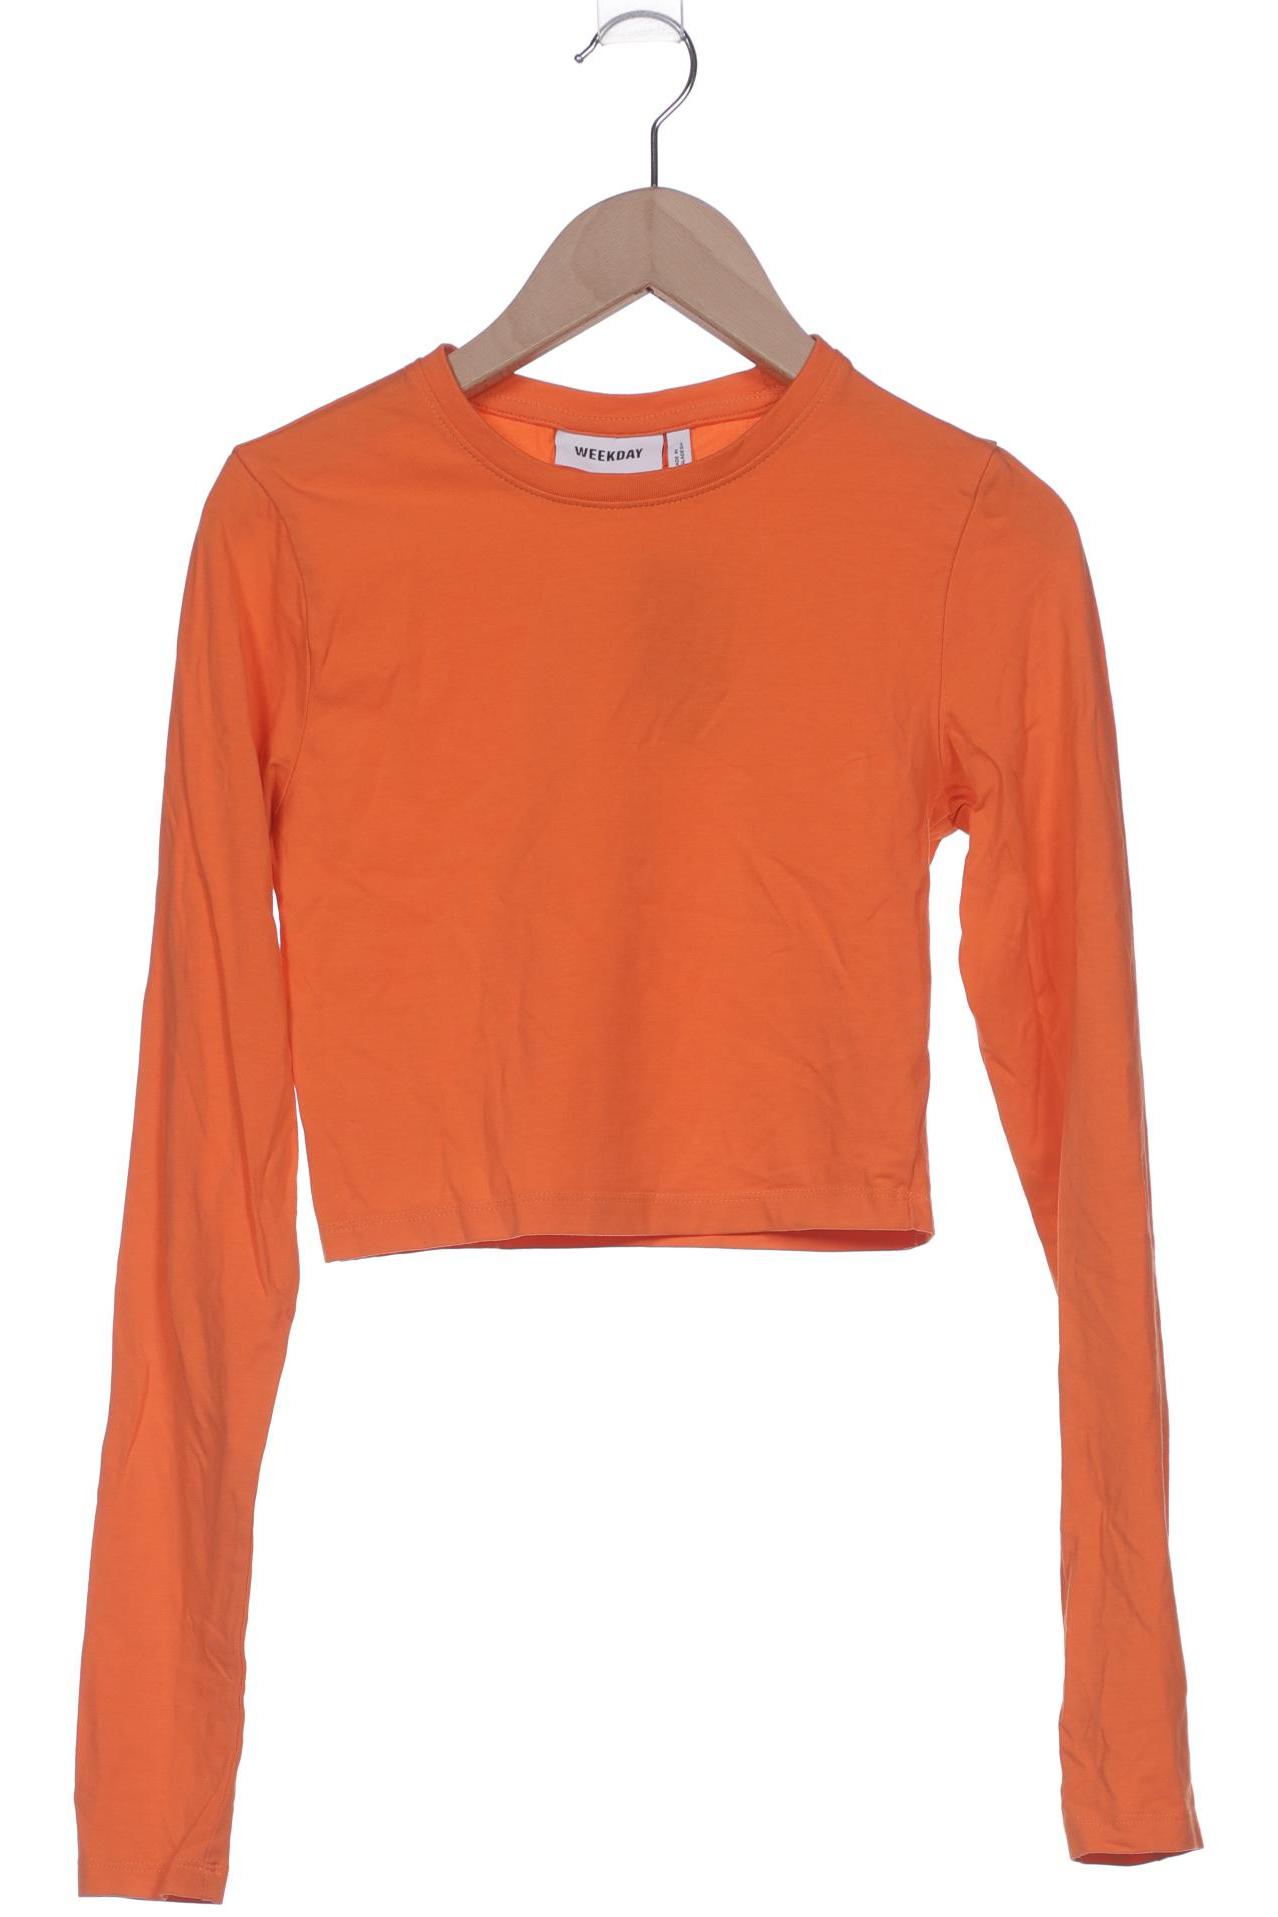 Weekday Damen Langarmshirt, orange, Gr. 36 von Weekday